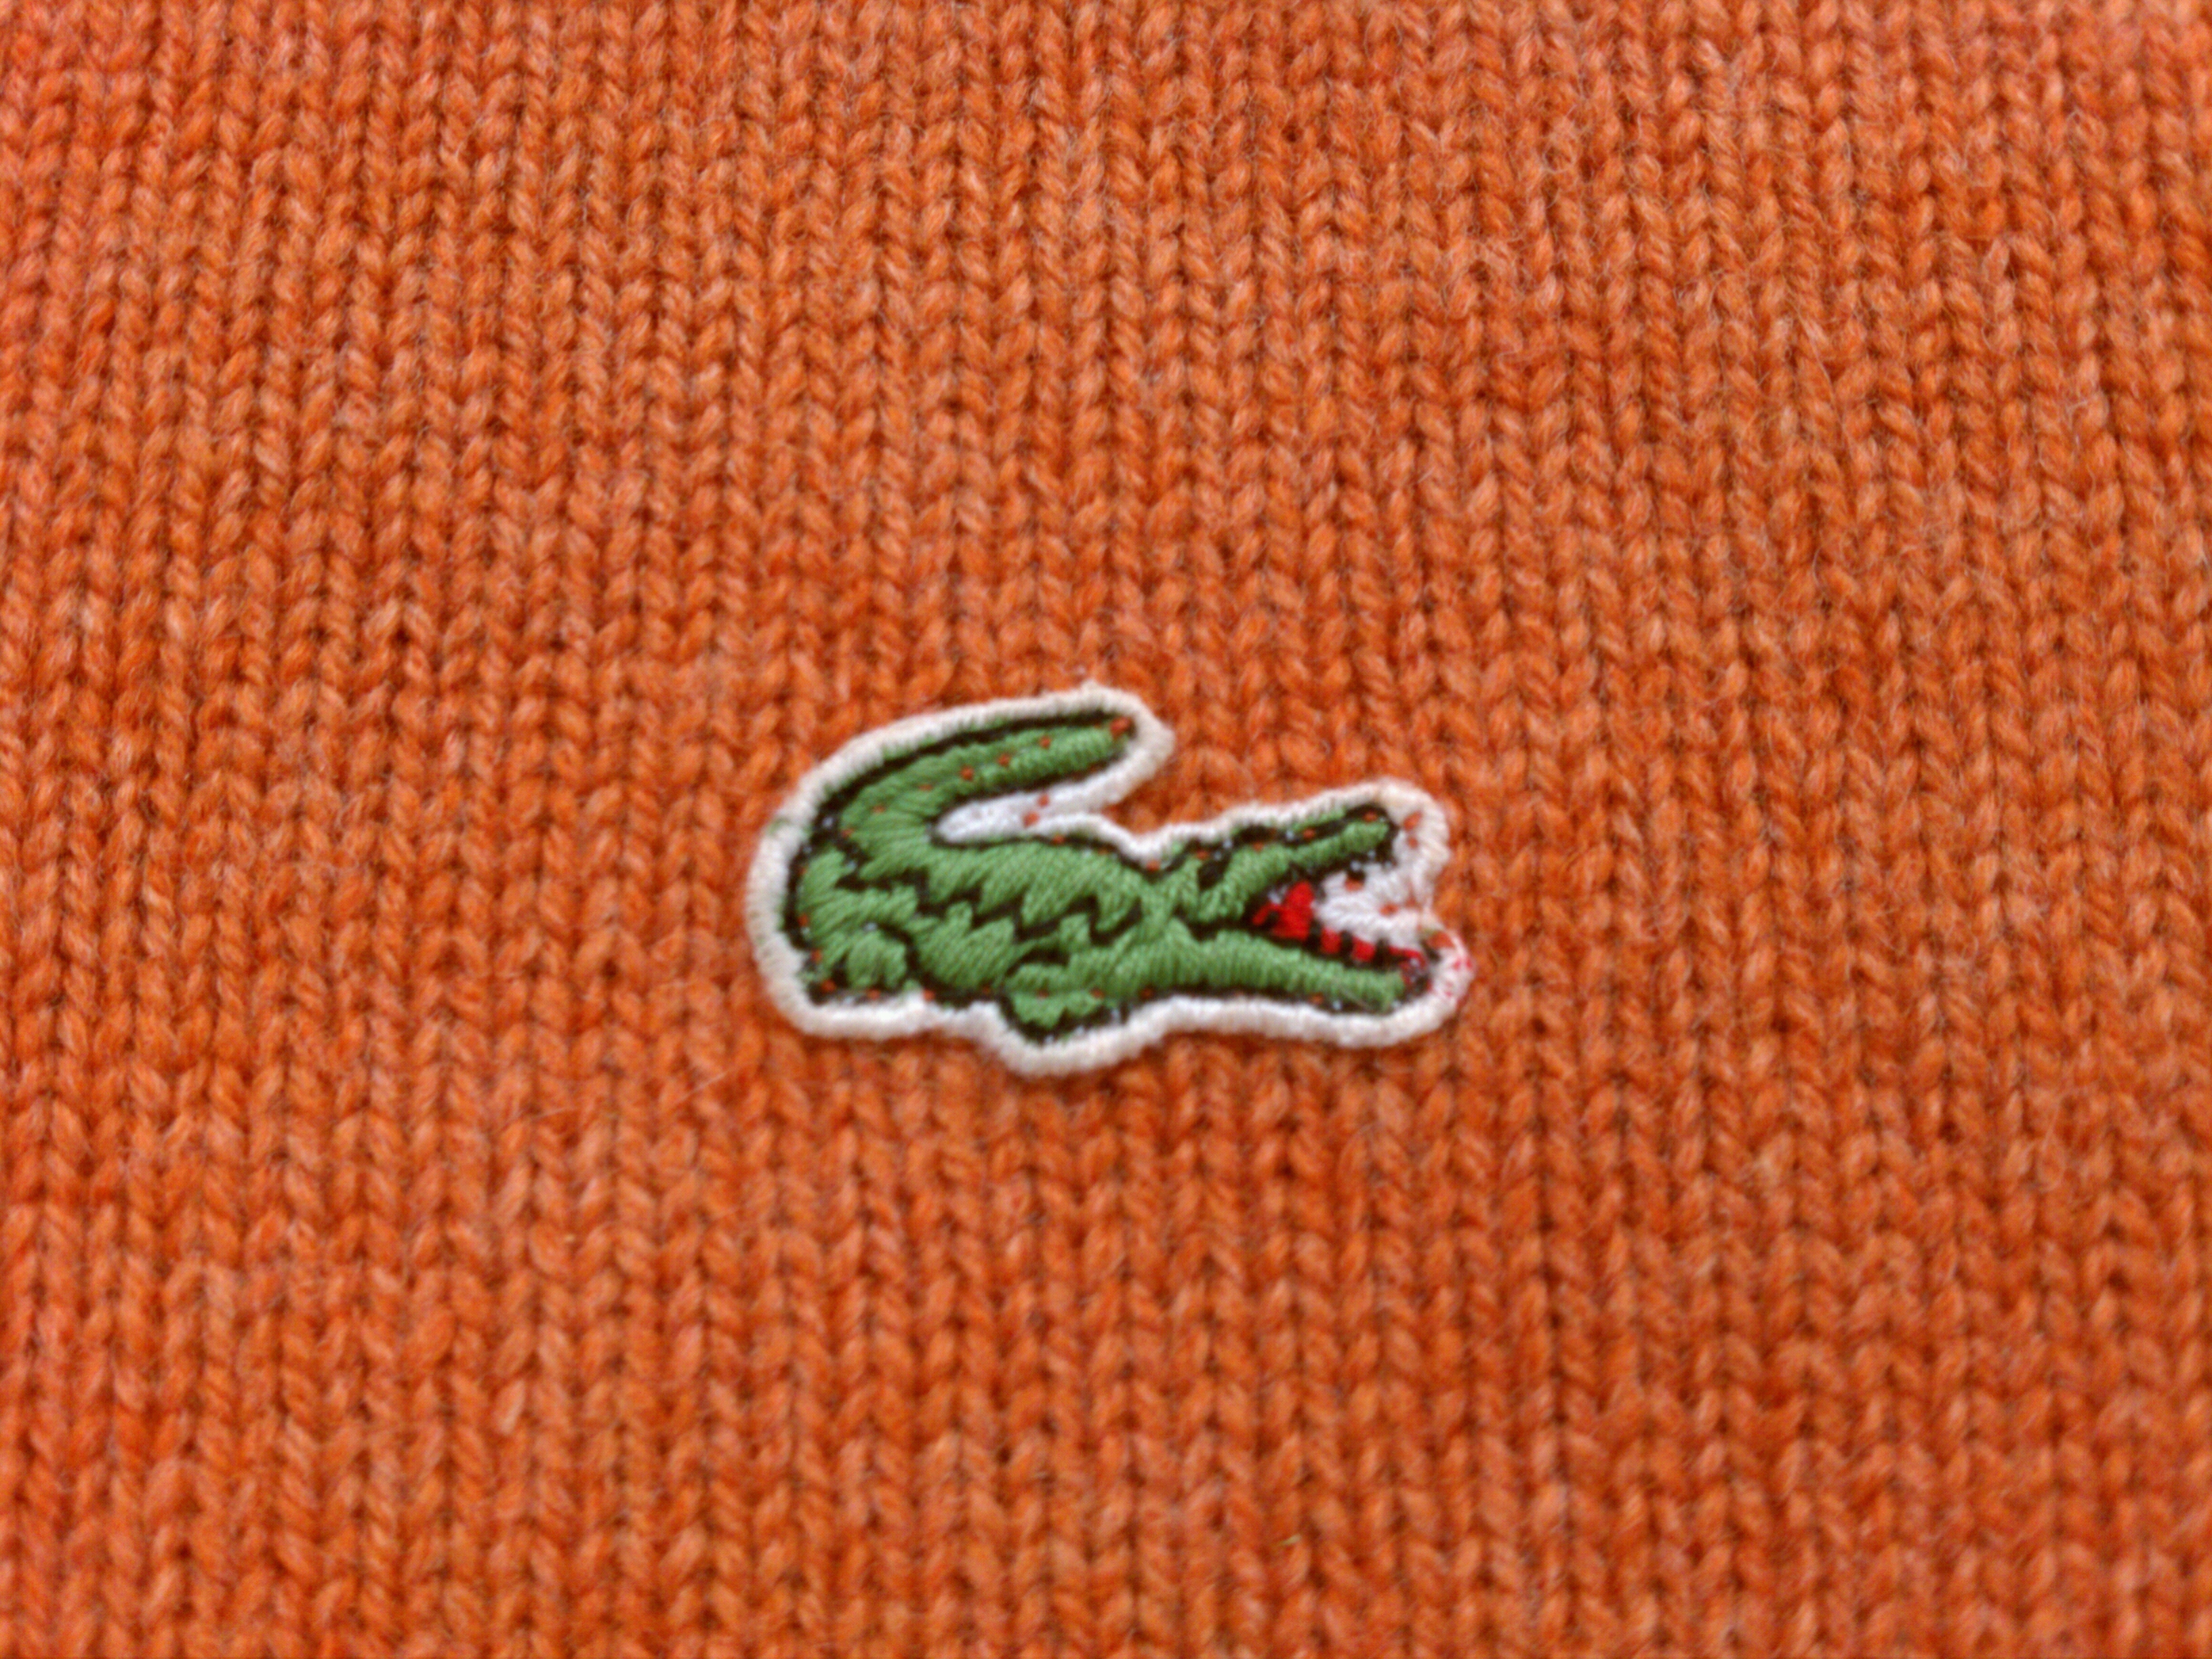 crocodile emblem clothing